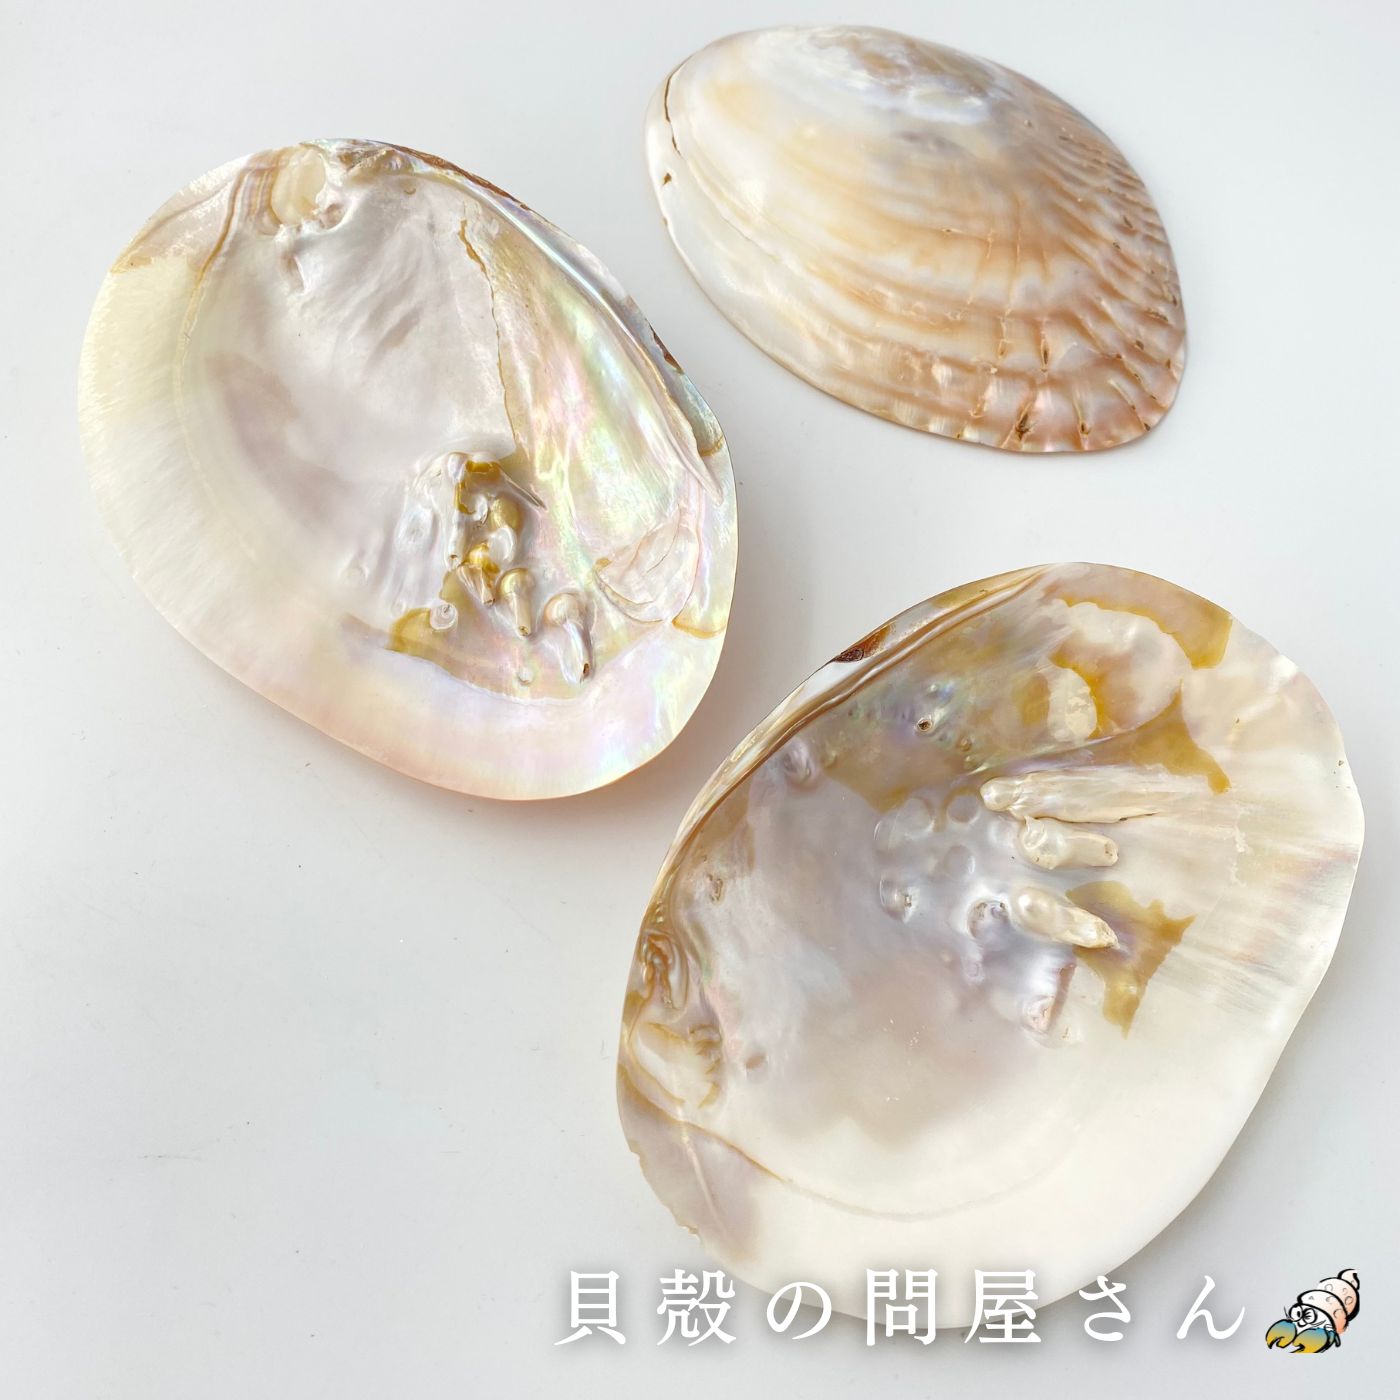 ［二枚貝］イシガイ真珠磨き片面貝 貝殻 シェル 二枚貝 磨き